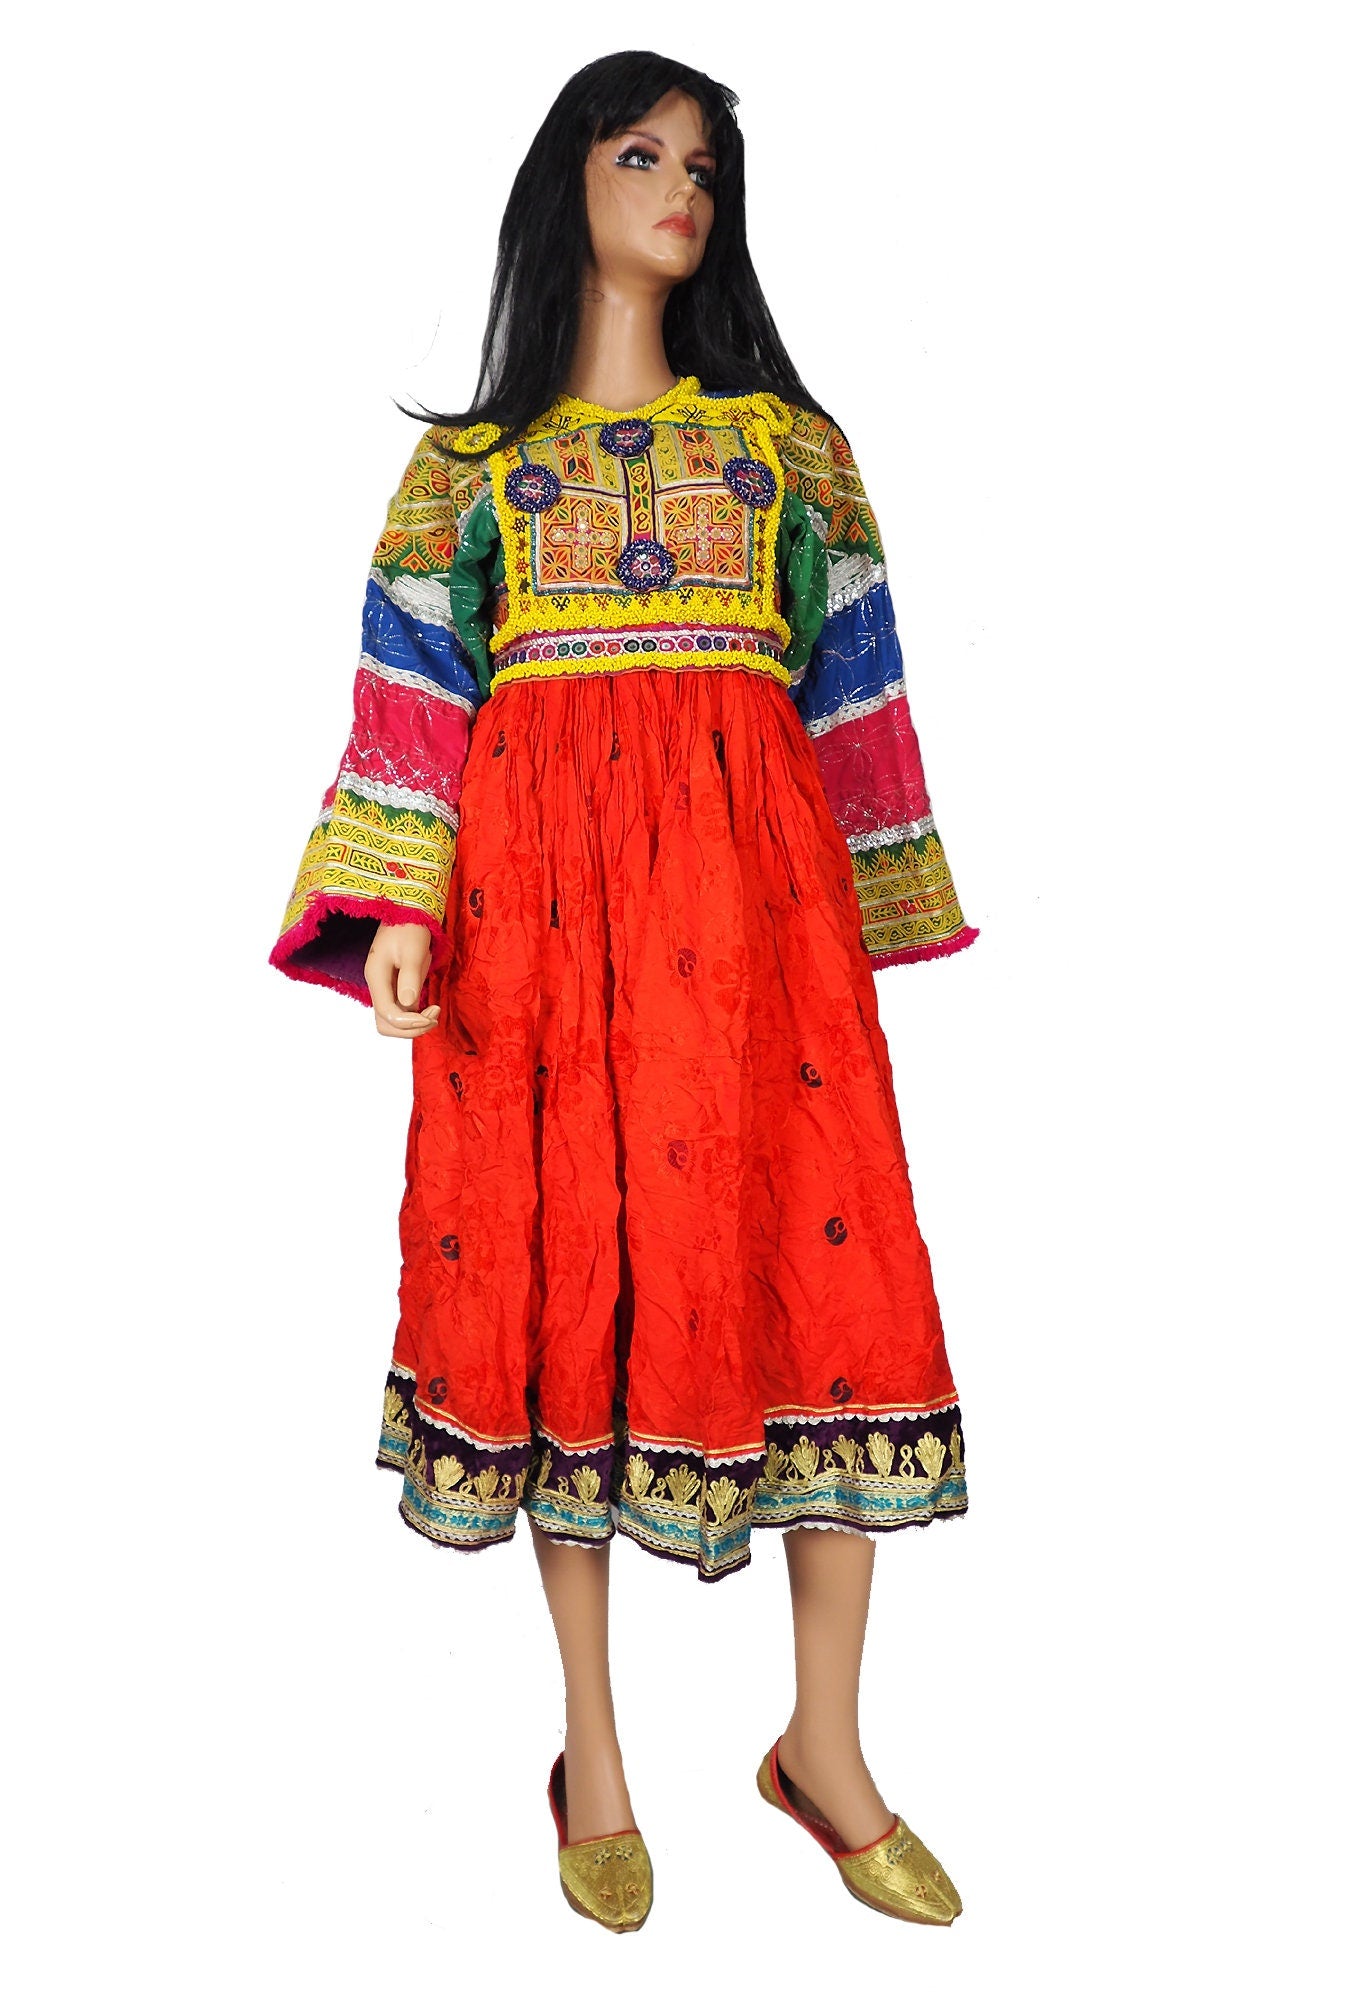 antik Orient Nomaden kuchi frauen Hochzeit Tracht afghan  kleid afghanistan hand bestickte kostüm Nr-WL21/4  Orientsbazar   